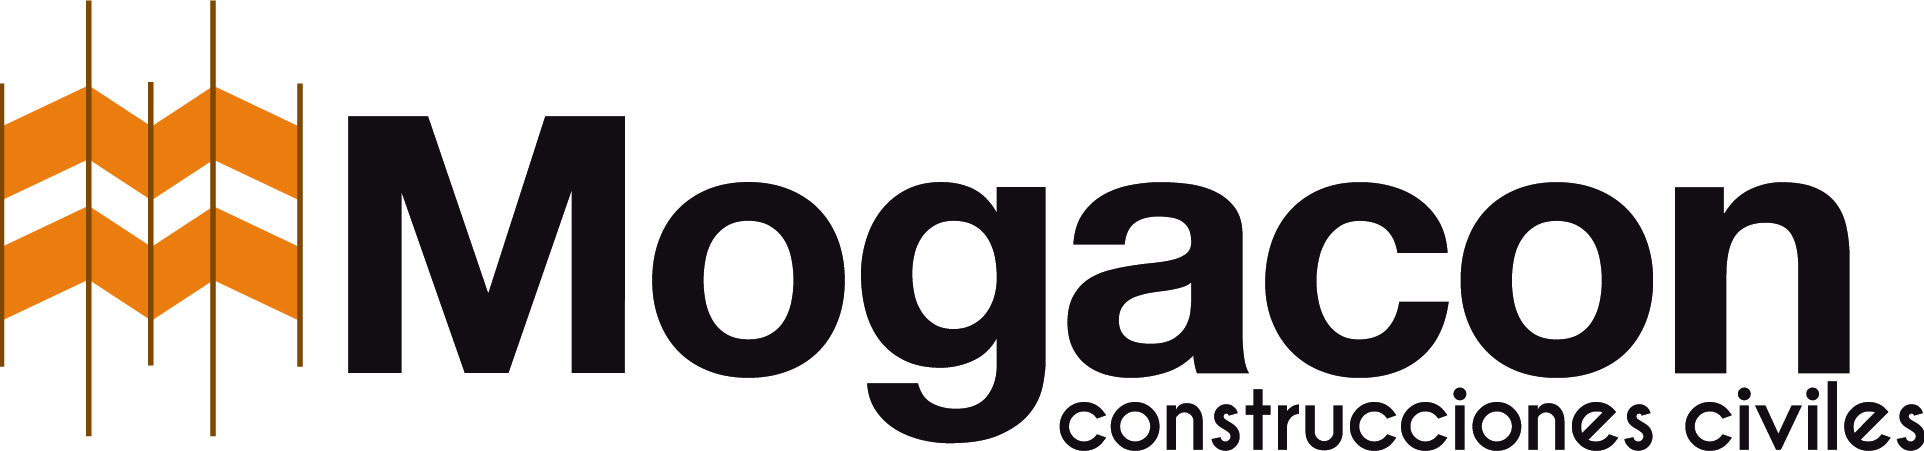 logos-clientes-Mogacon